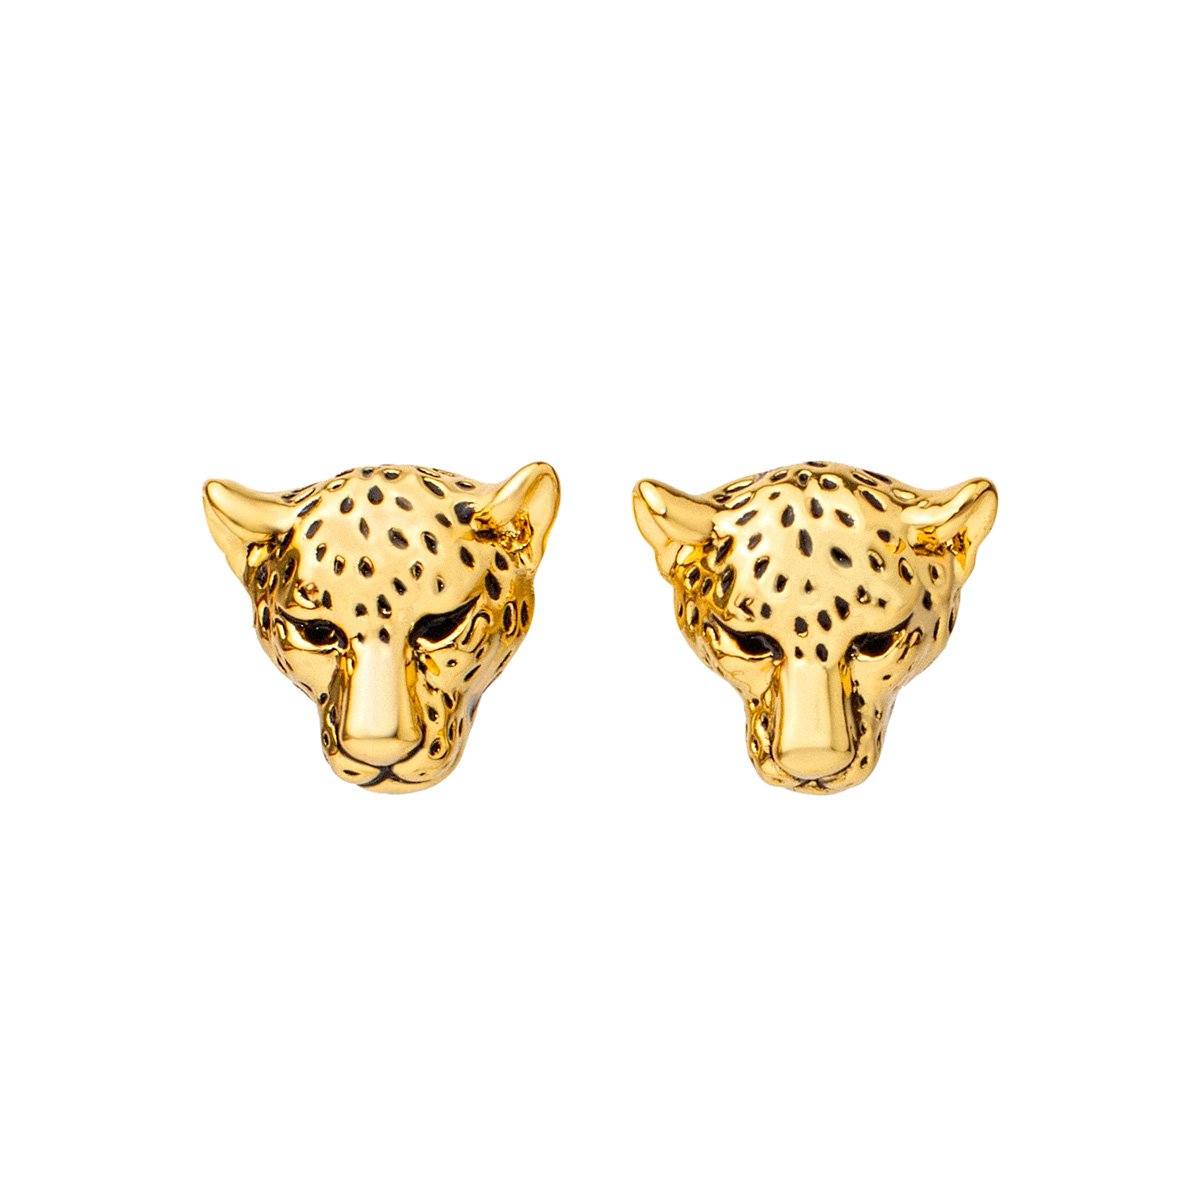 Cheetah Stud Earrings earrings Vinty Jewelry 